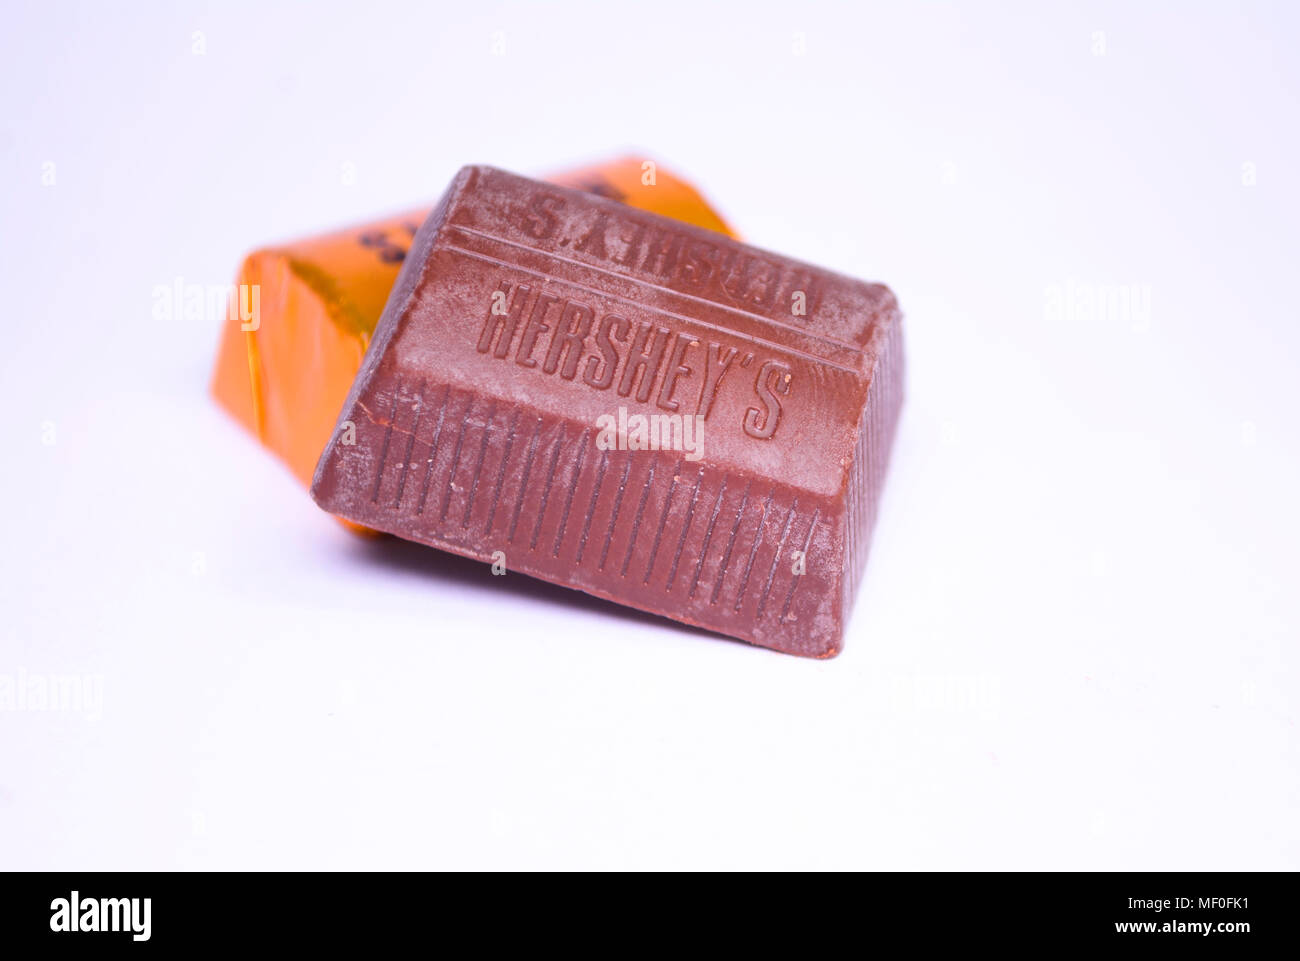 Hersheys chocolate in white background Stock Photo